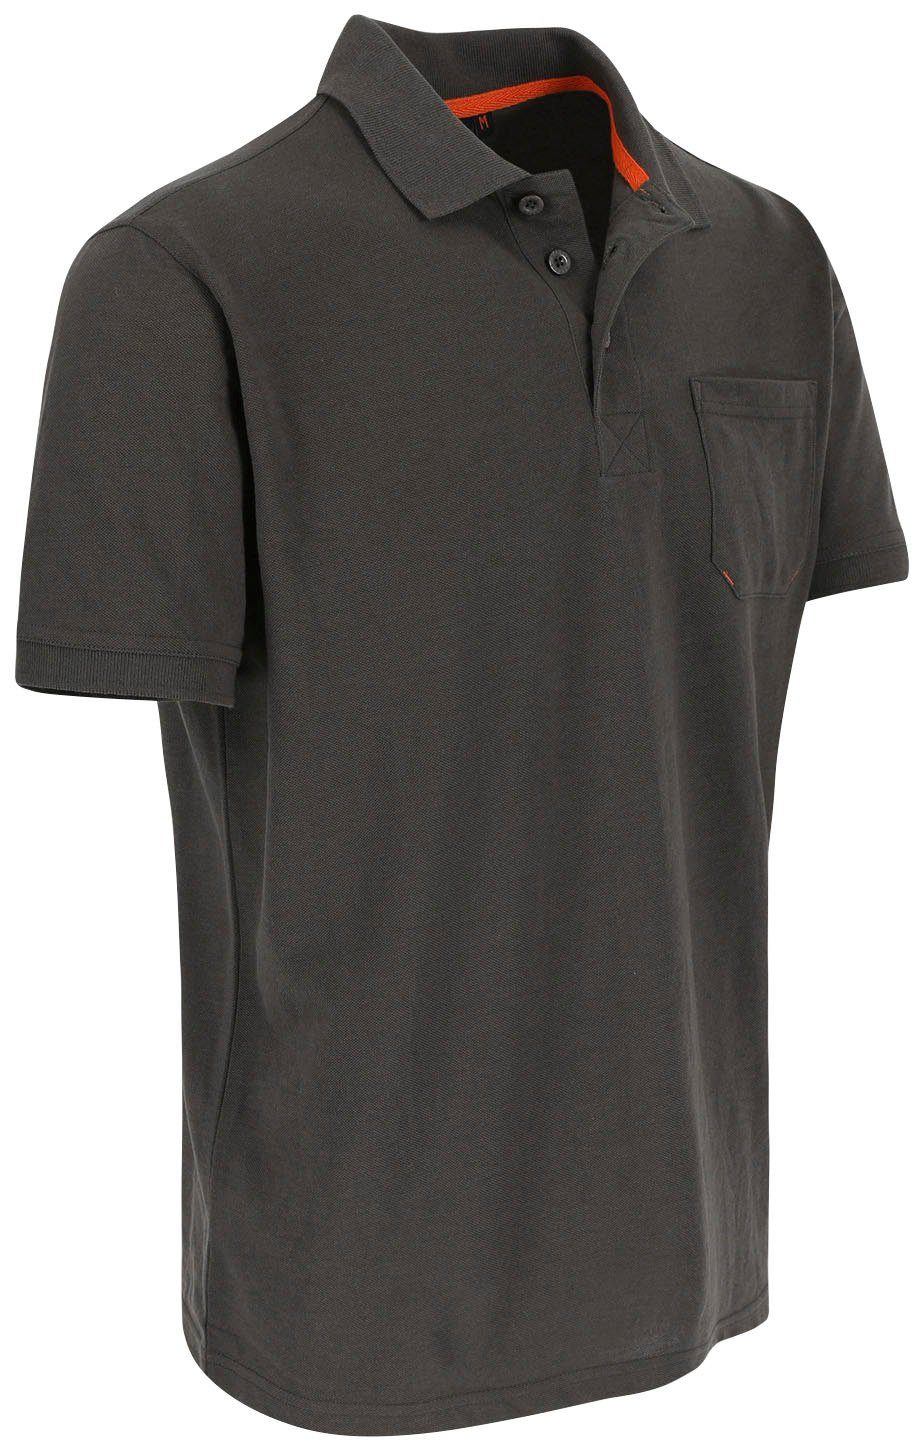 1 grau und Kurzärmlig Poloshirt Herock Farben Leo Bündchen, Rippstrick-Kragen verschiedene Polohemd Brusttasche,